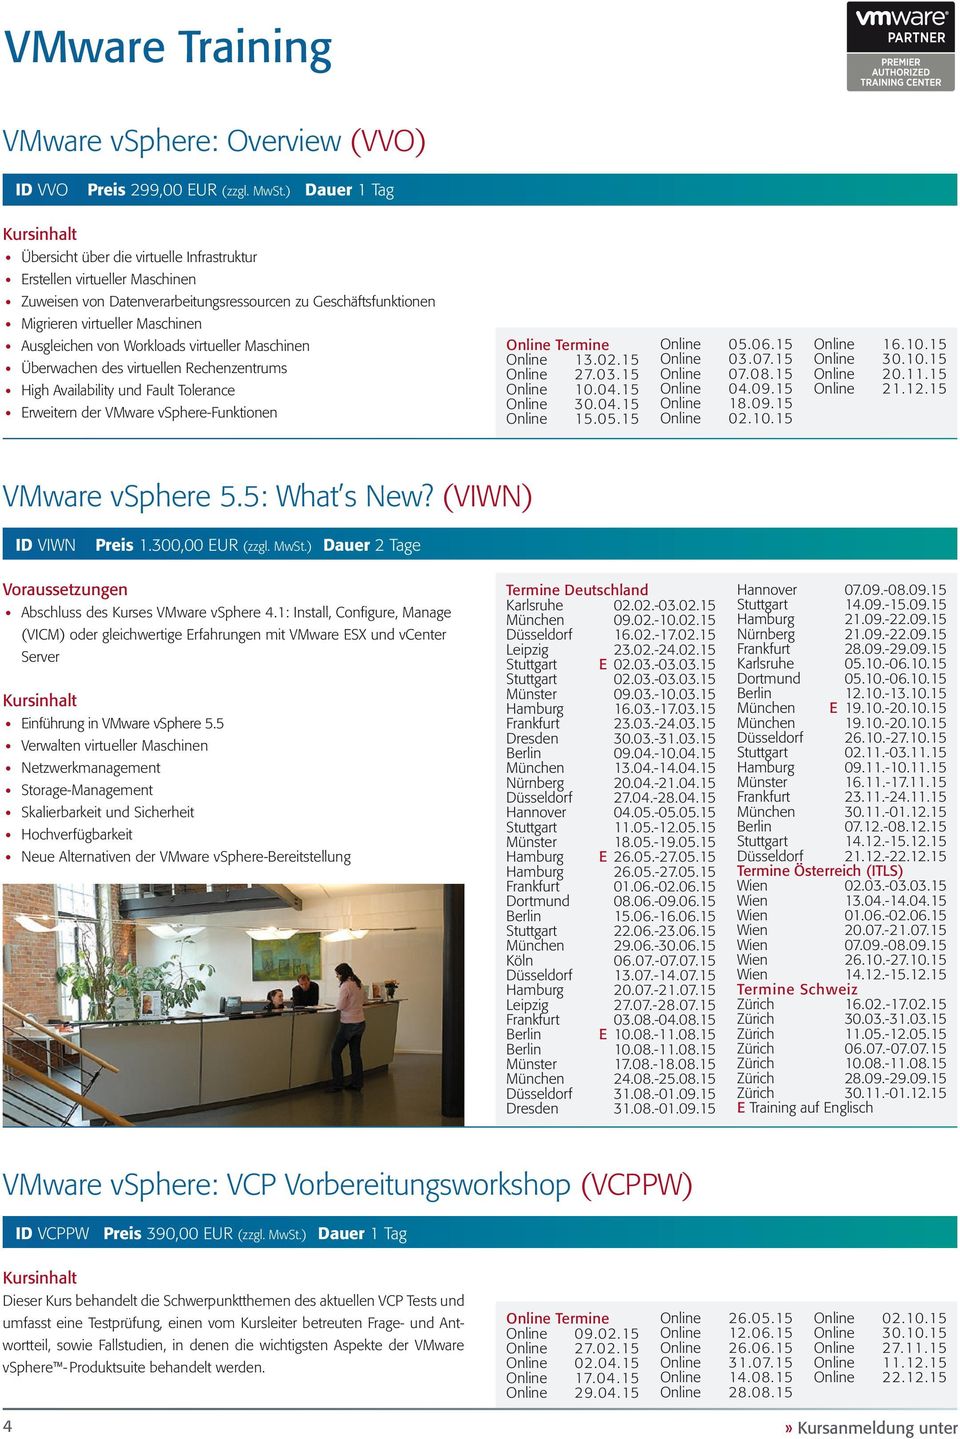 Workloads virtueller Maschinen Überwachen des virtuellen Rechenzentrums High Availability und Fault Tolerance Erweitern der VMware vsphere-funktionen Online Termine Online 13.02.15 Online 27.03.